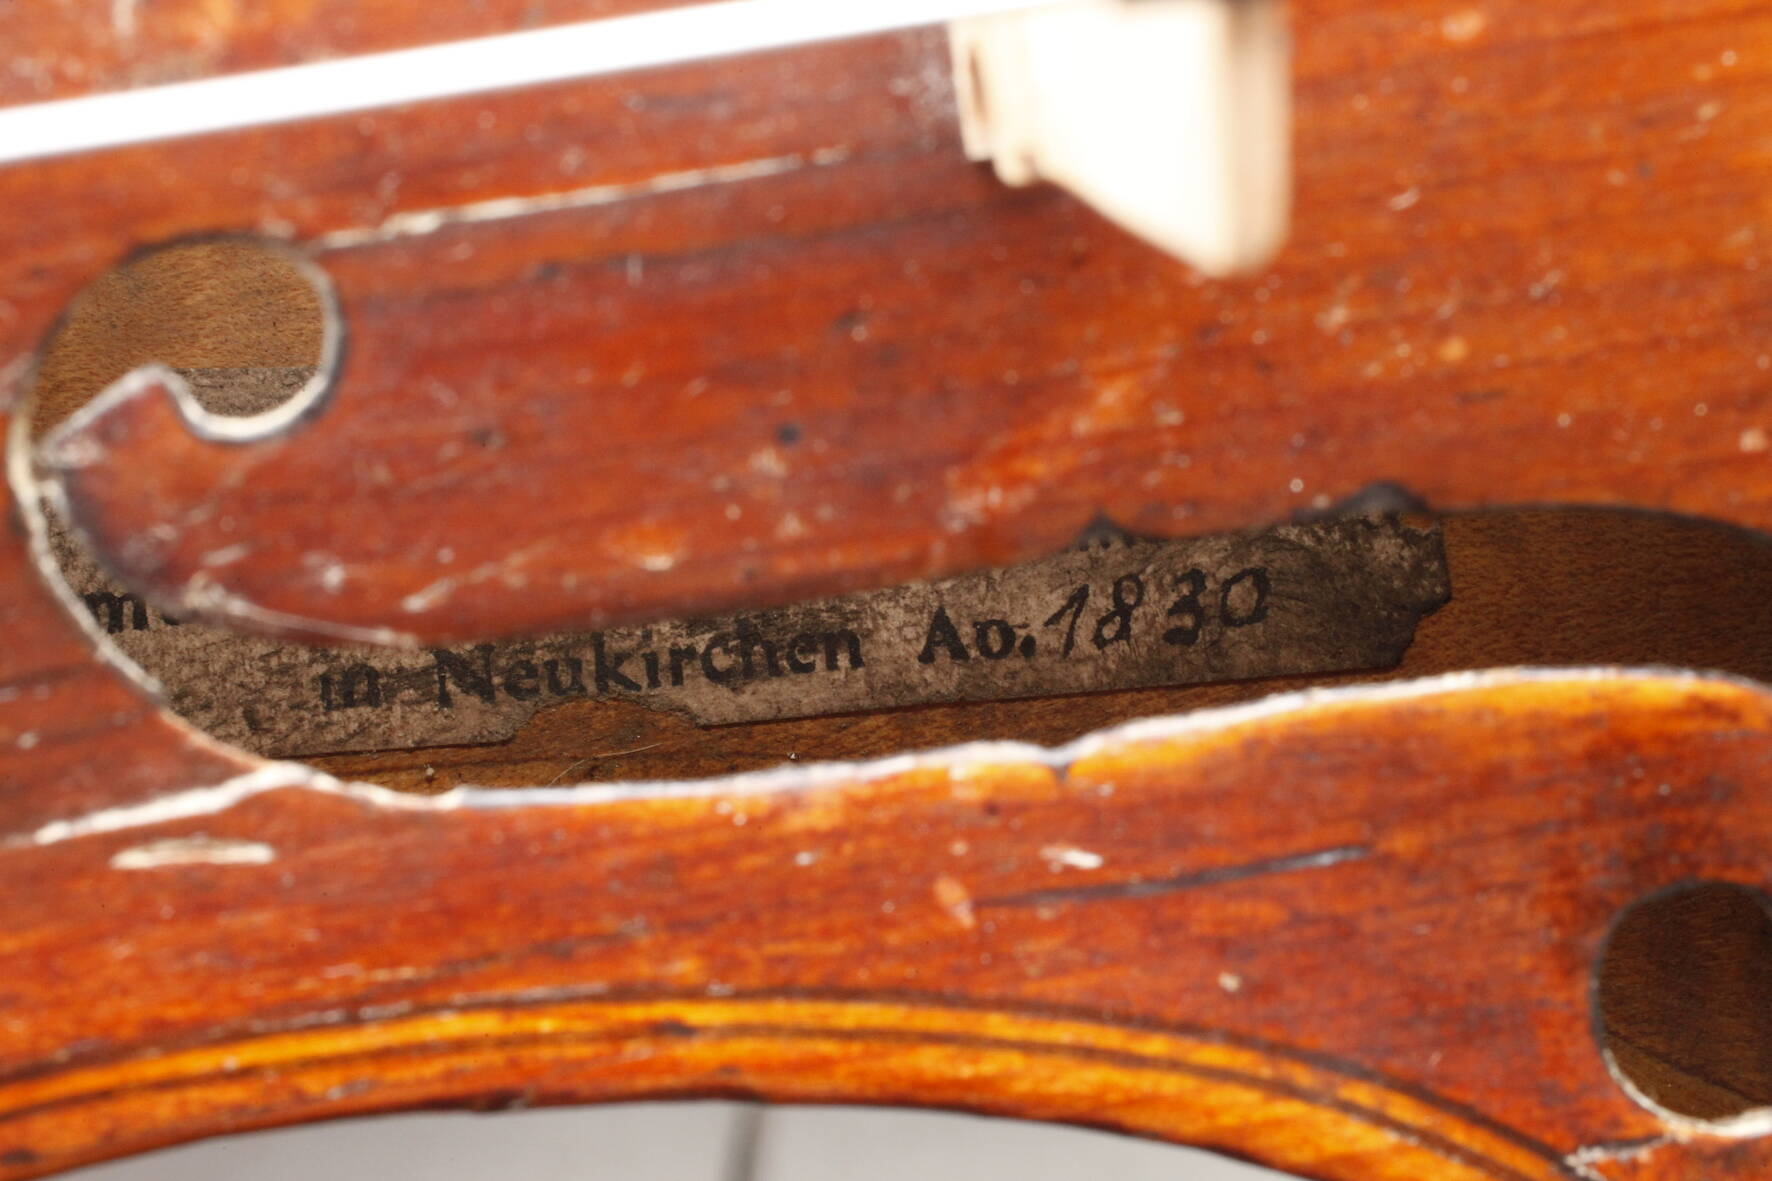 Violineauf Klebezettel bez. Johann Adam Reichel, musicalischer Instrumentenmacher in Neukirchen anno - Image 8 of 8